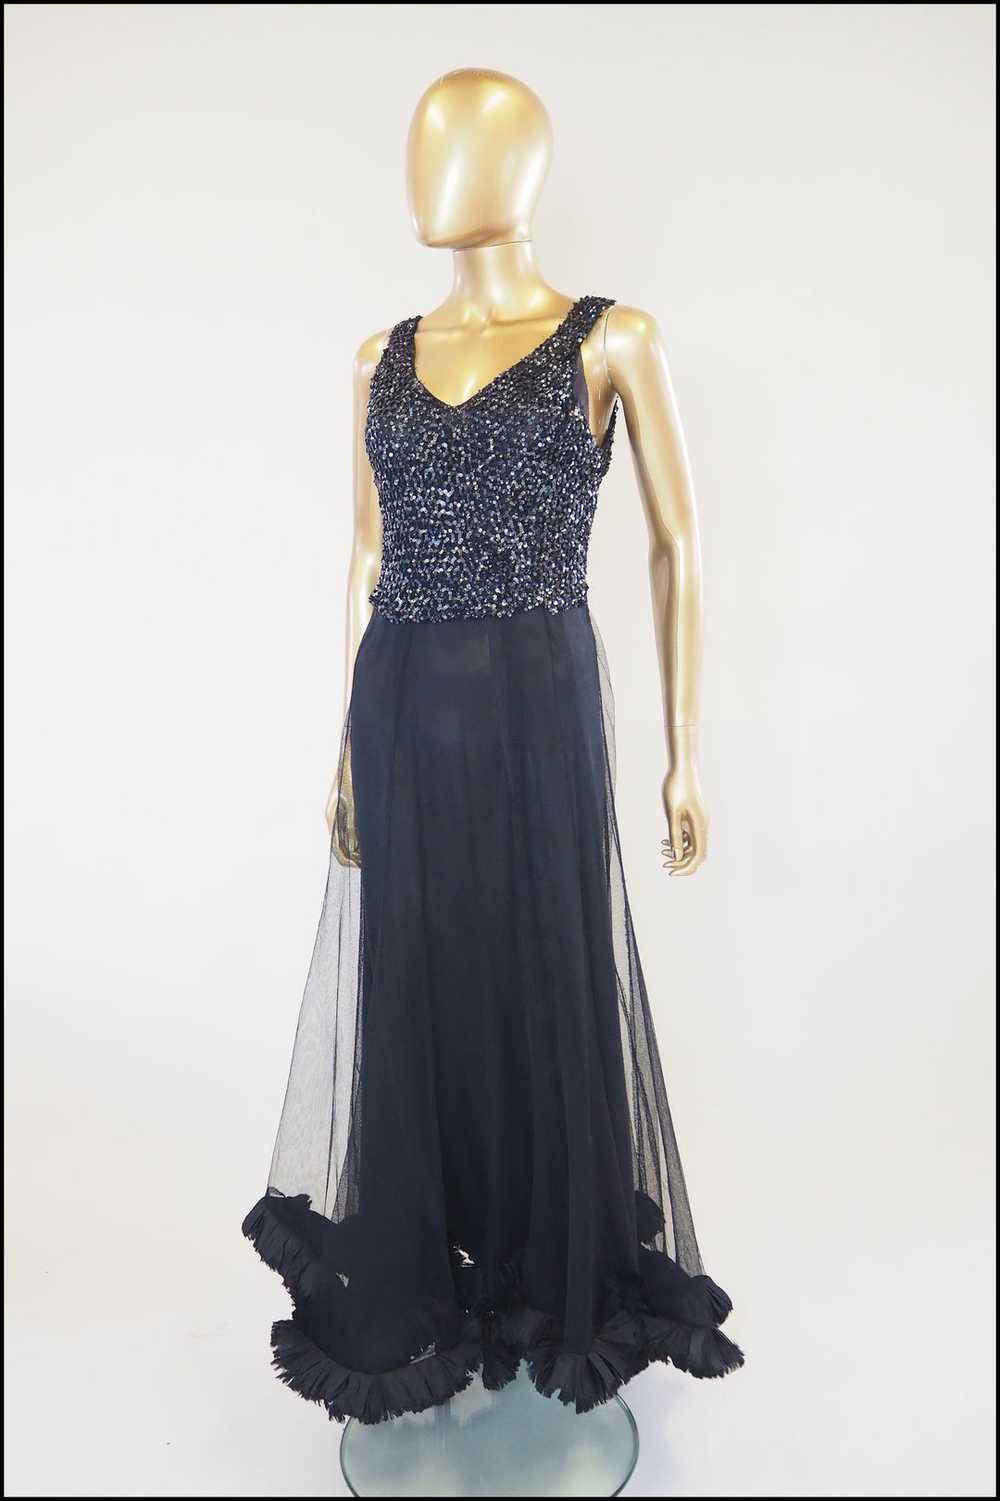 Vintage 1930s Black Sequin Tulle Dress - image 2